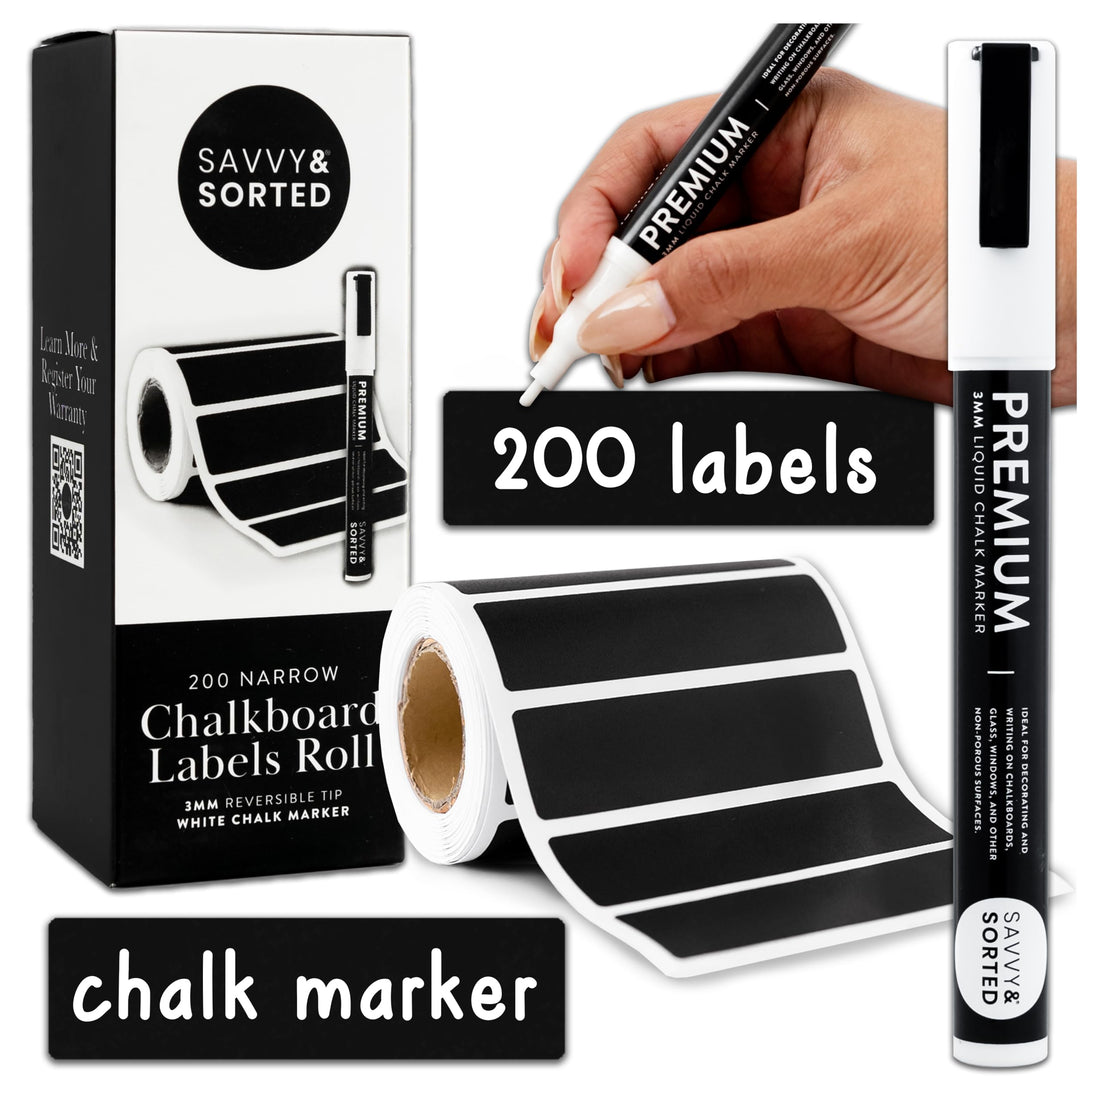 200 Narrow Chalkboard Labels Roll